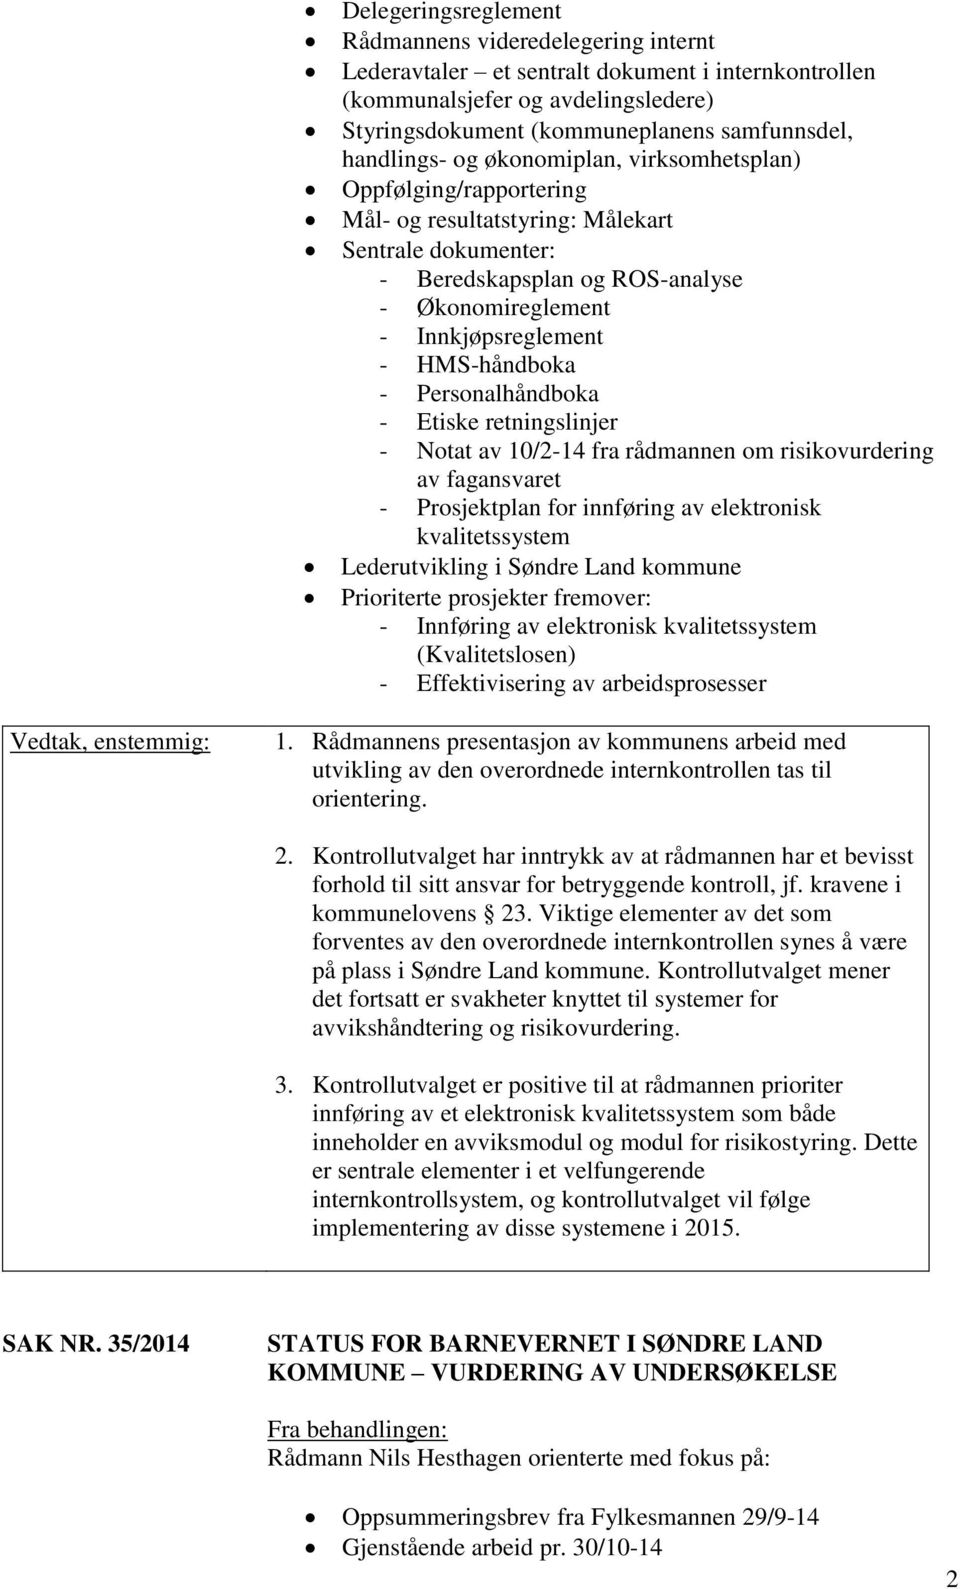 HMS-håndboka - Personalhåndboka - Etiske retningslinjer - Notat av 10/2-14 fra rådmannen om risikovurdering av fagansvaret - Prosjektplan for innføring av elektronisk kvalitetssystem Lederutvikling i